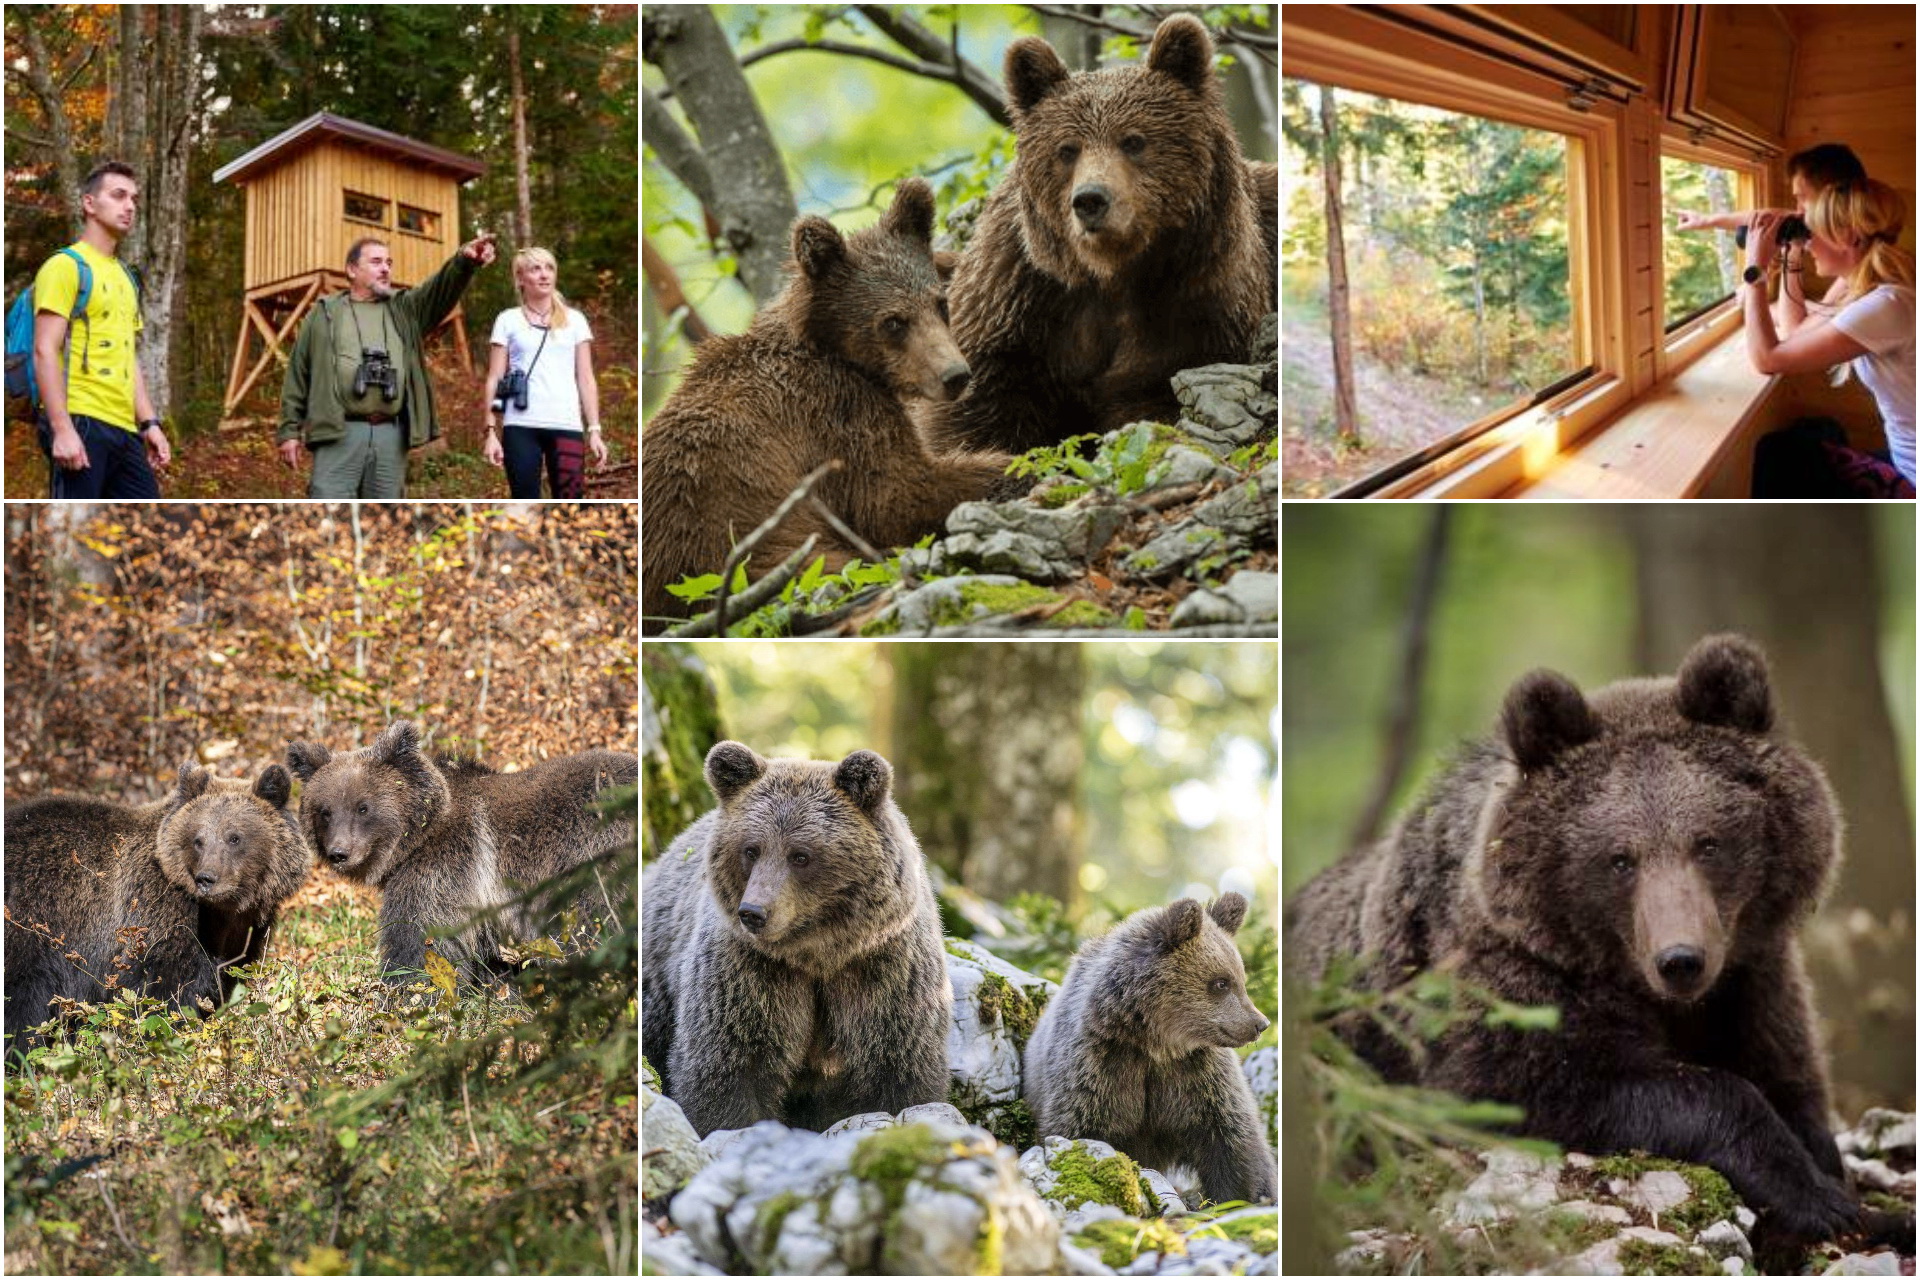 Bearwatching Loska dolina - Slovenia